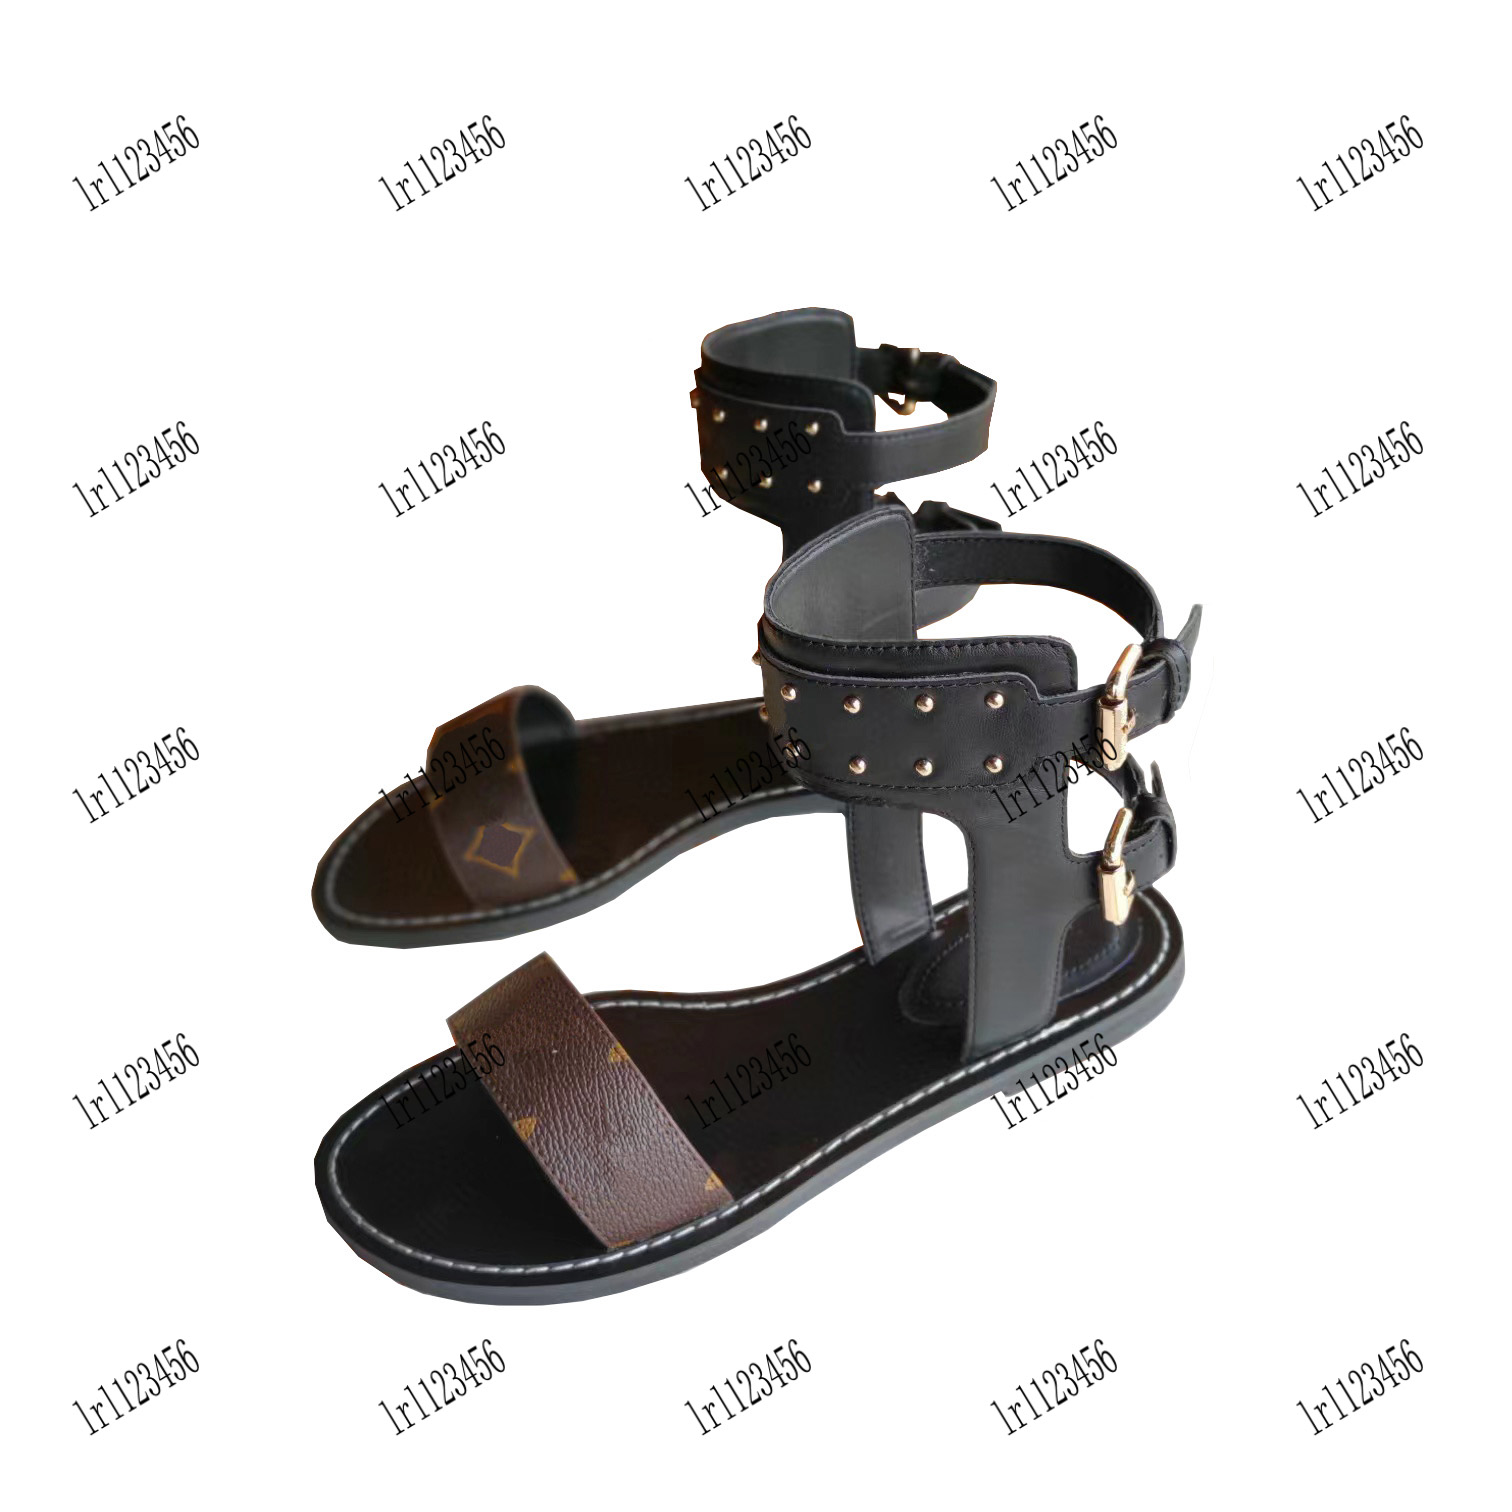 Chaussures de créateurs de luxe Chaussures pour femmes Sandales hautes de haute qualité Pantoufles chaussures plates d'été Sandales en cuir véritable Glisser des pantoufles de plage avec boîte bateau libre